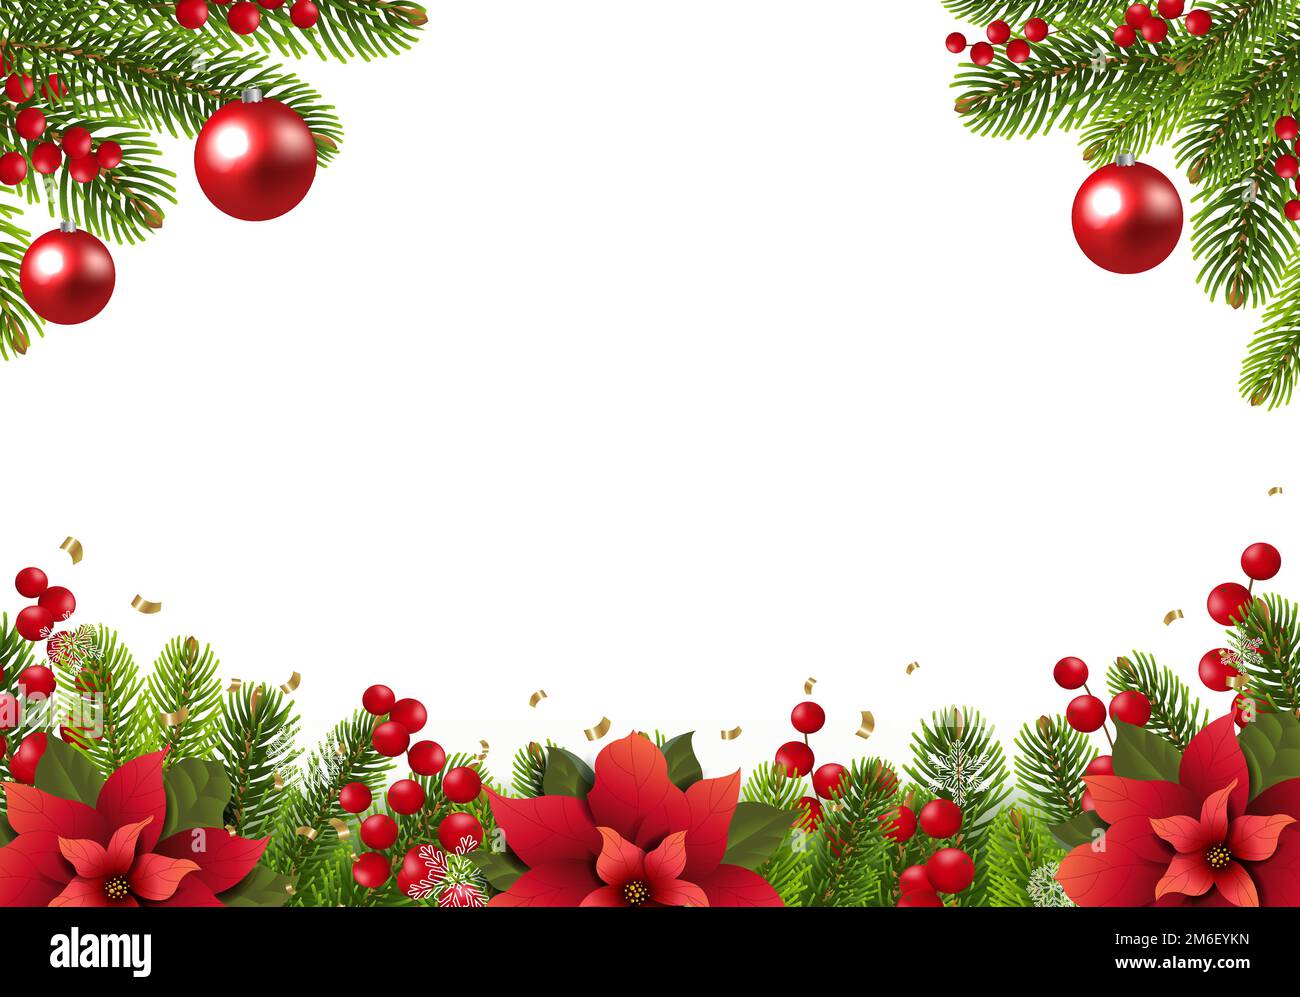 Carte postale de Noël avec bordure Poinsettia et fond blanc Banque D'Images